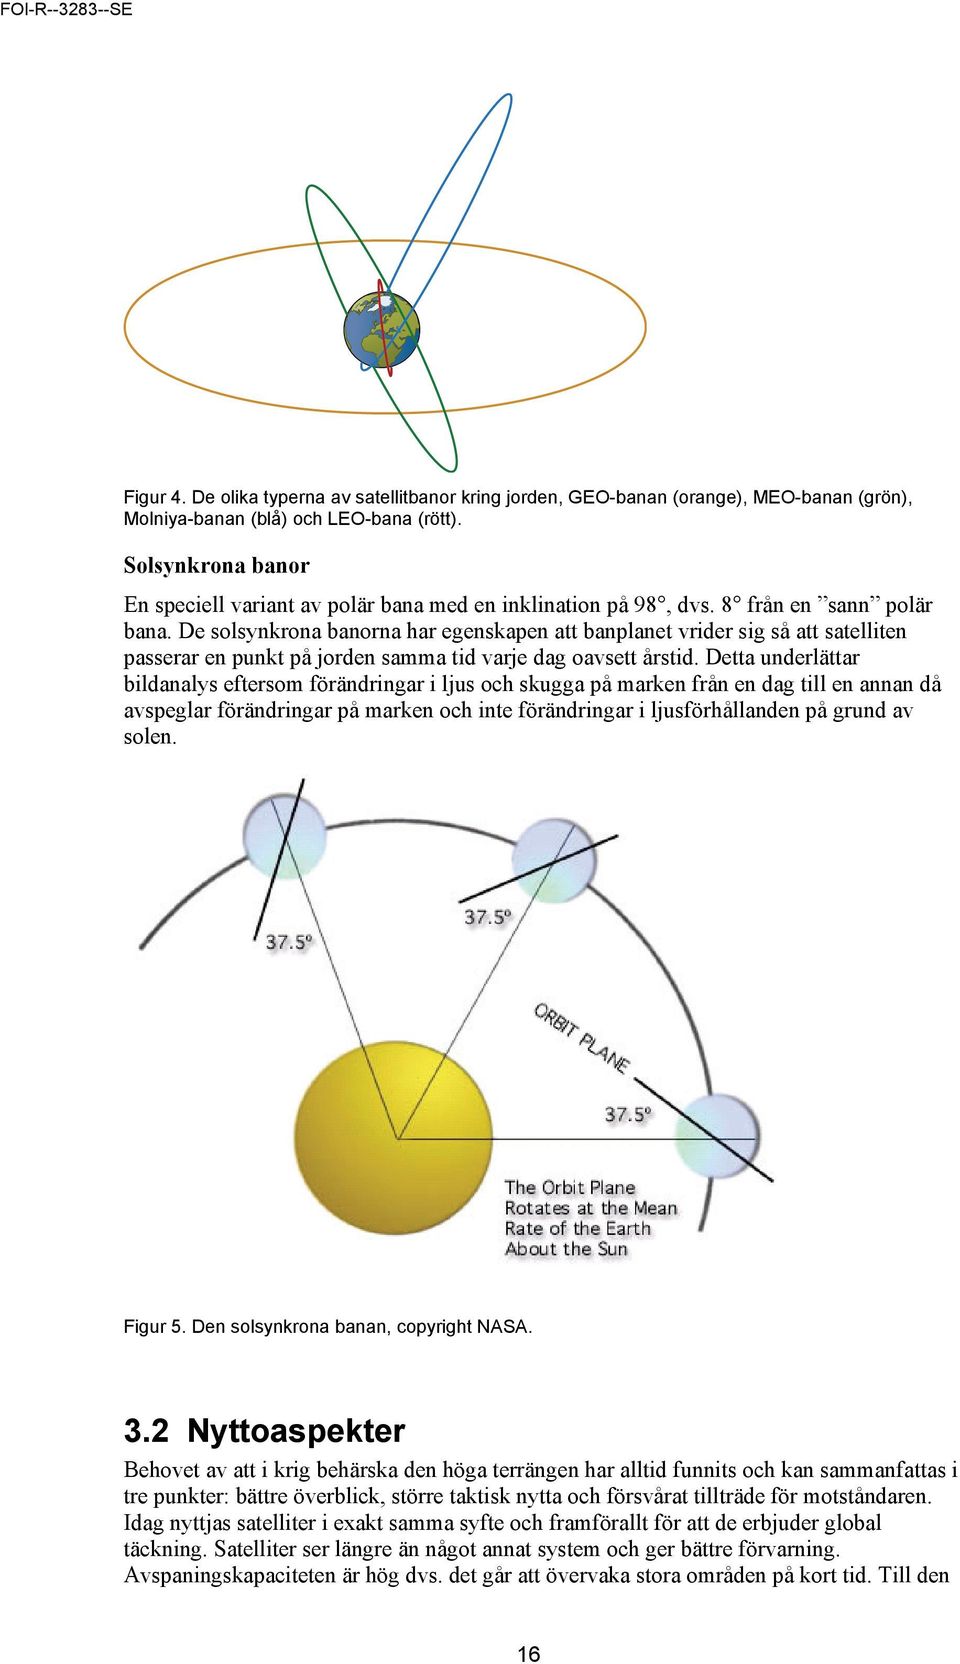 De solsynkrona banorna har egenskapen att banplanet vrider sig så att satelliten passerar en punkt på jorden samma tid varje dag oavsett årstid.